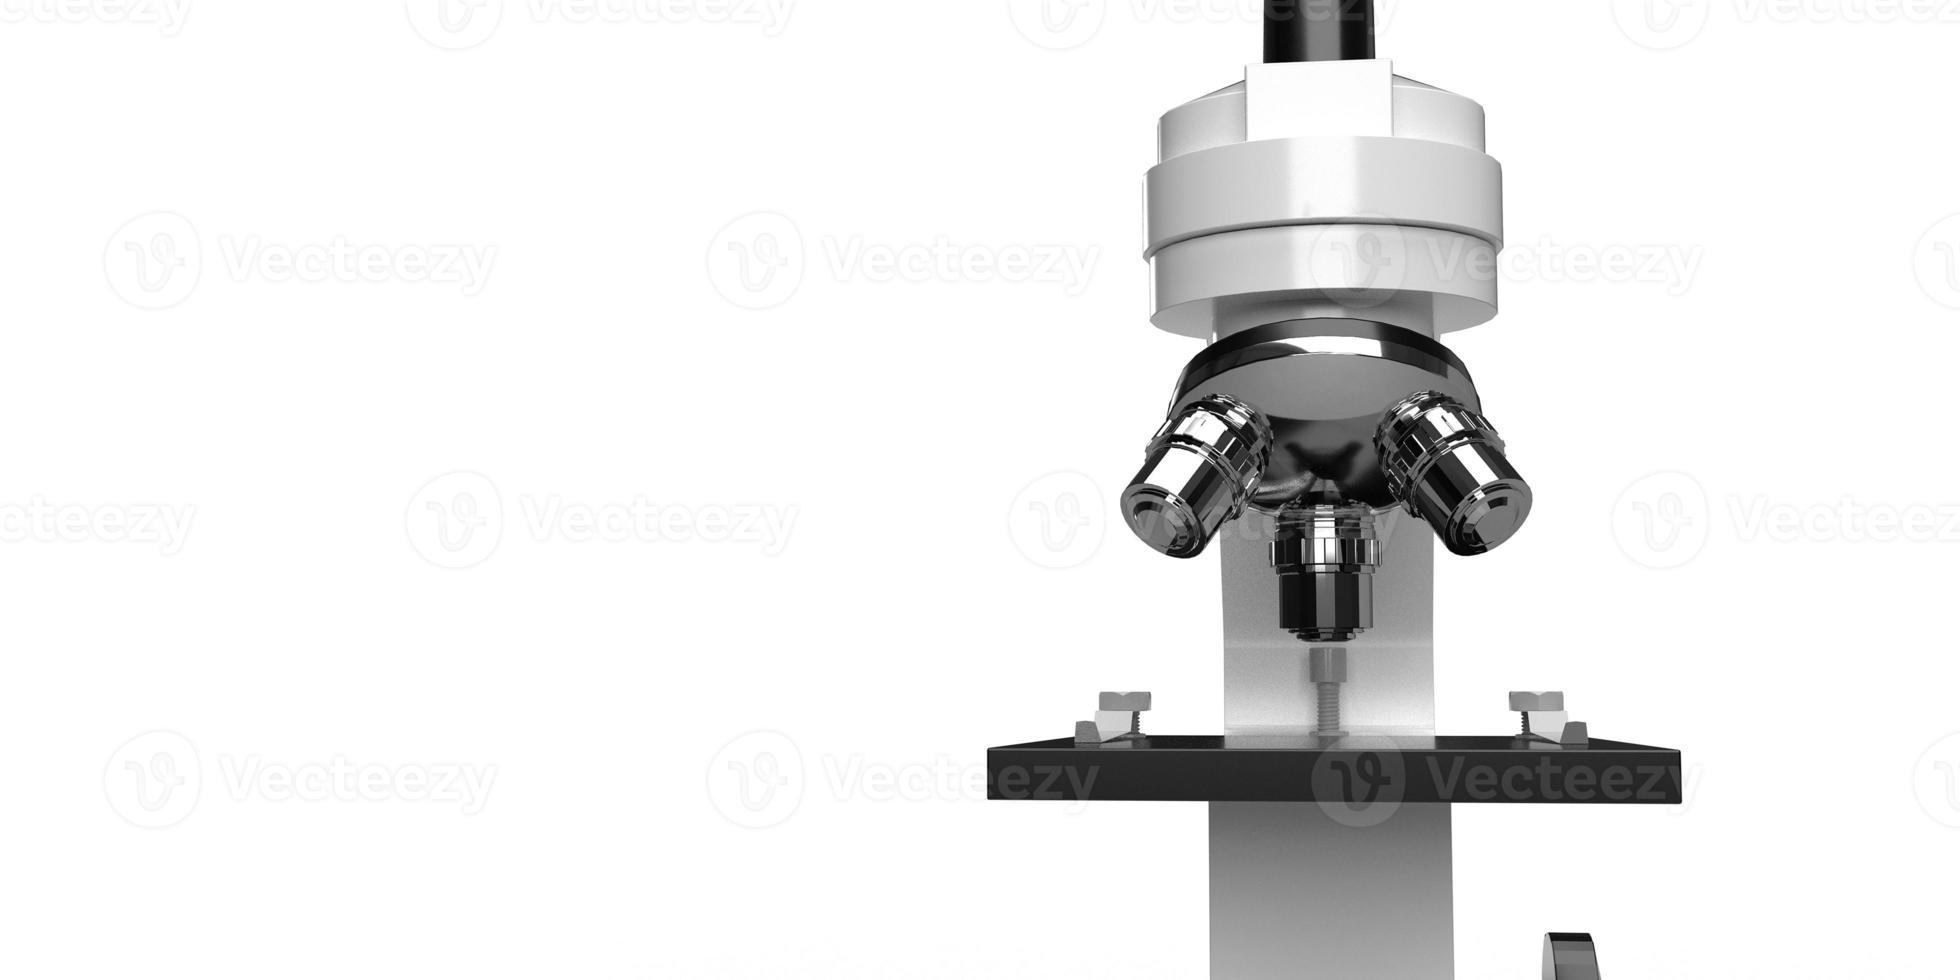 microscopio chimico monitor lente ottica tecnologia attrezzatura scienza ricerca elettronica test cellula cancro corona virus covid-19 trattamento assistenza sanitaria medico ingrandimento laboratorio system.3d rendering foto